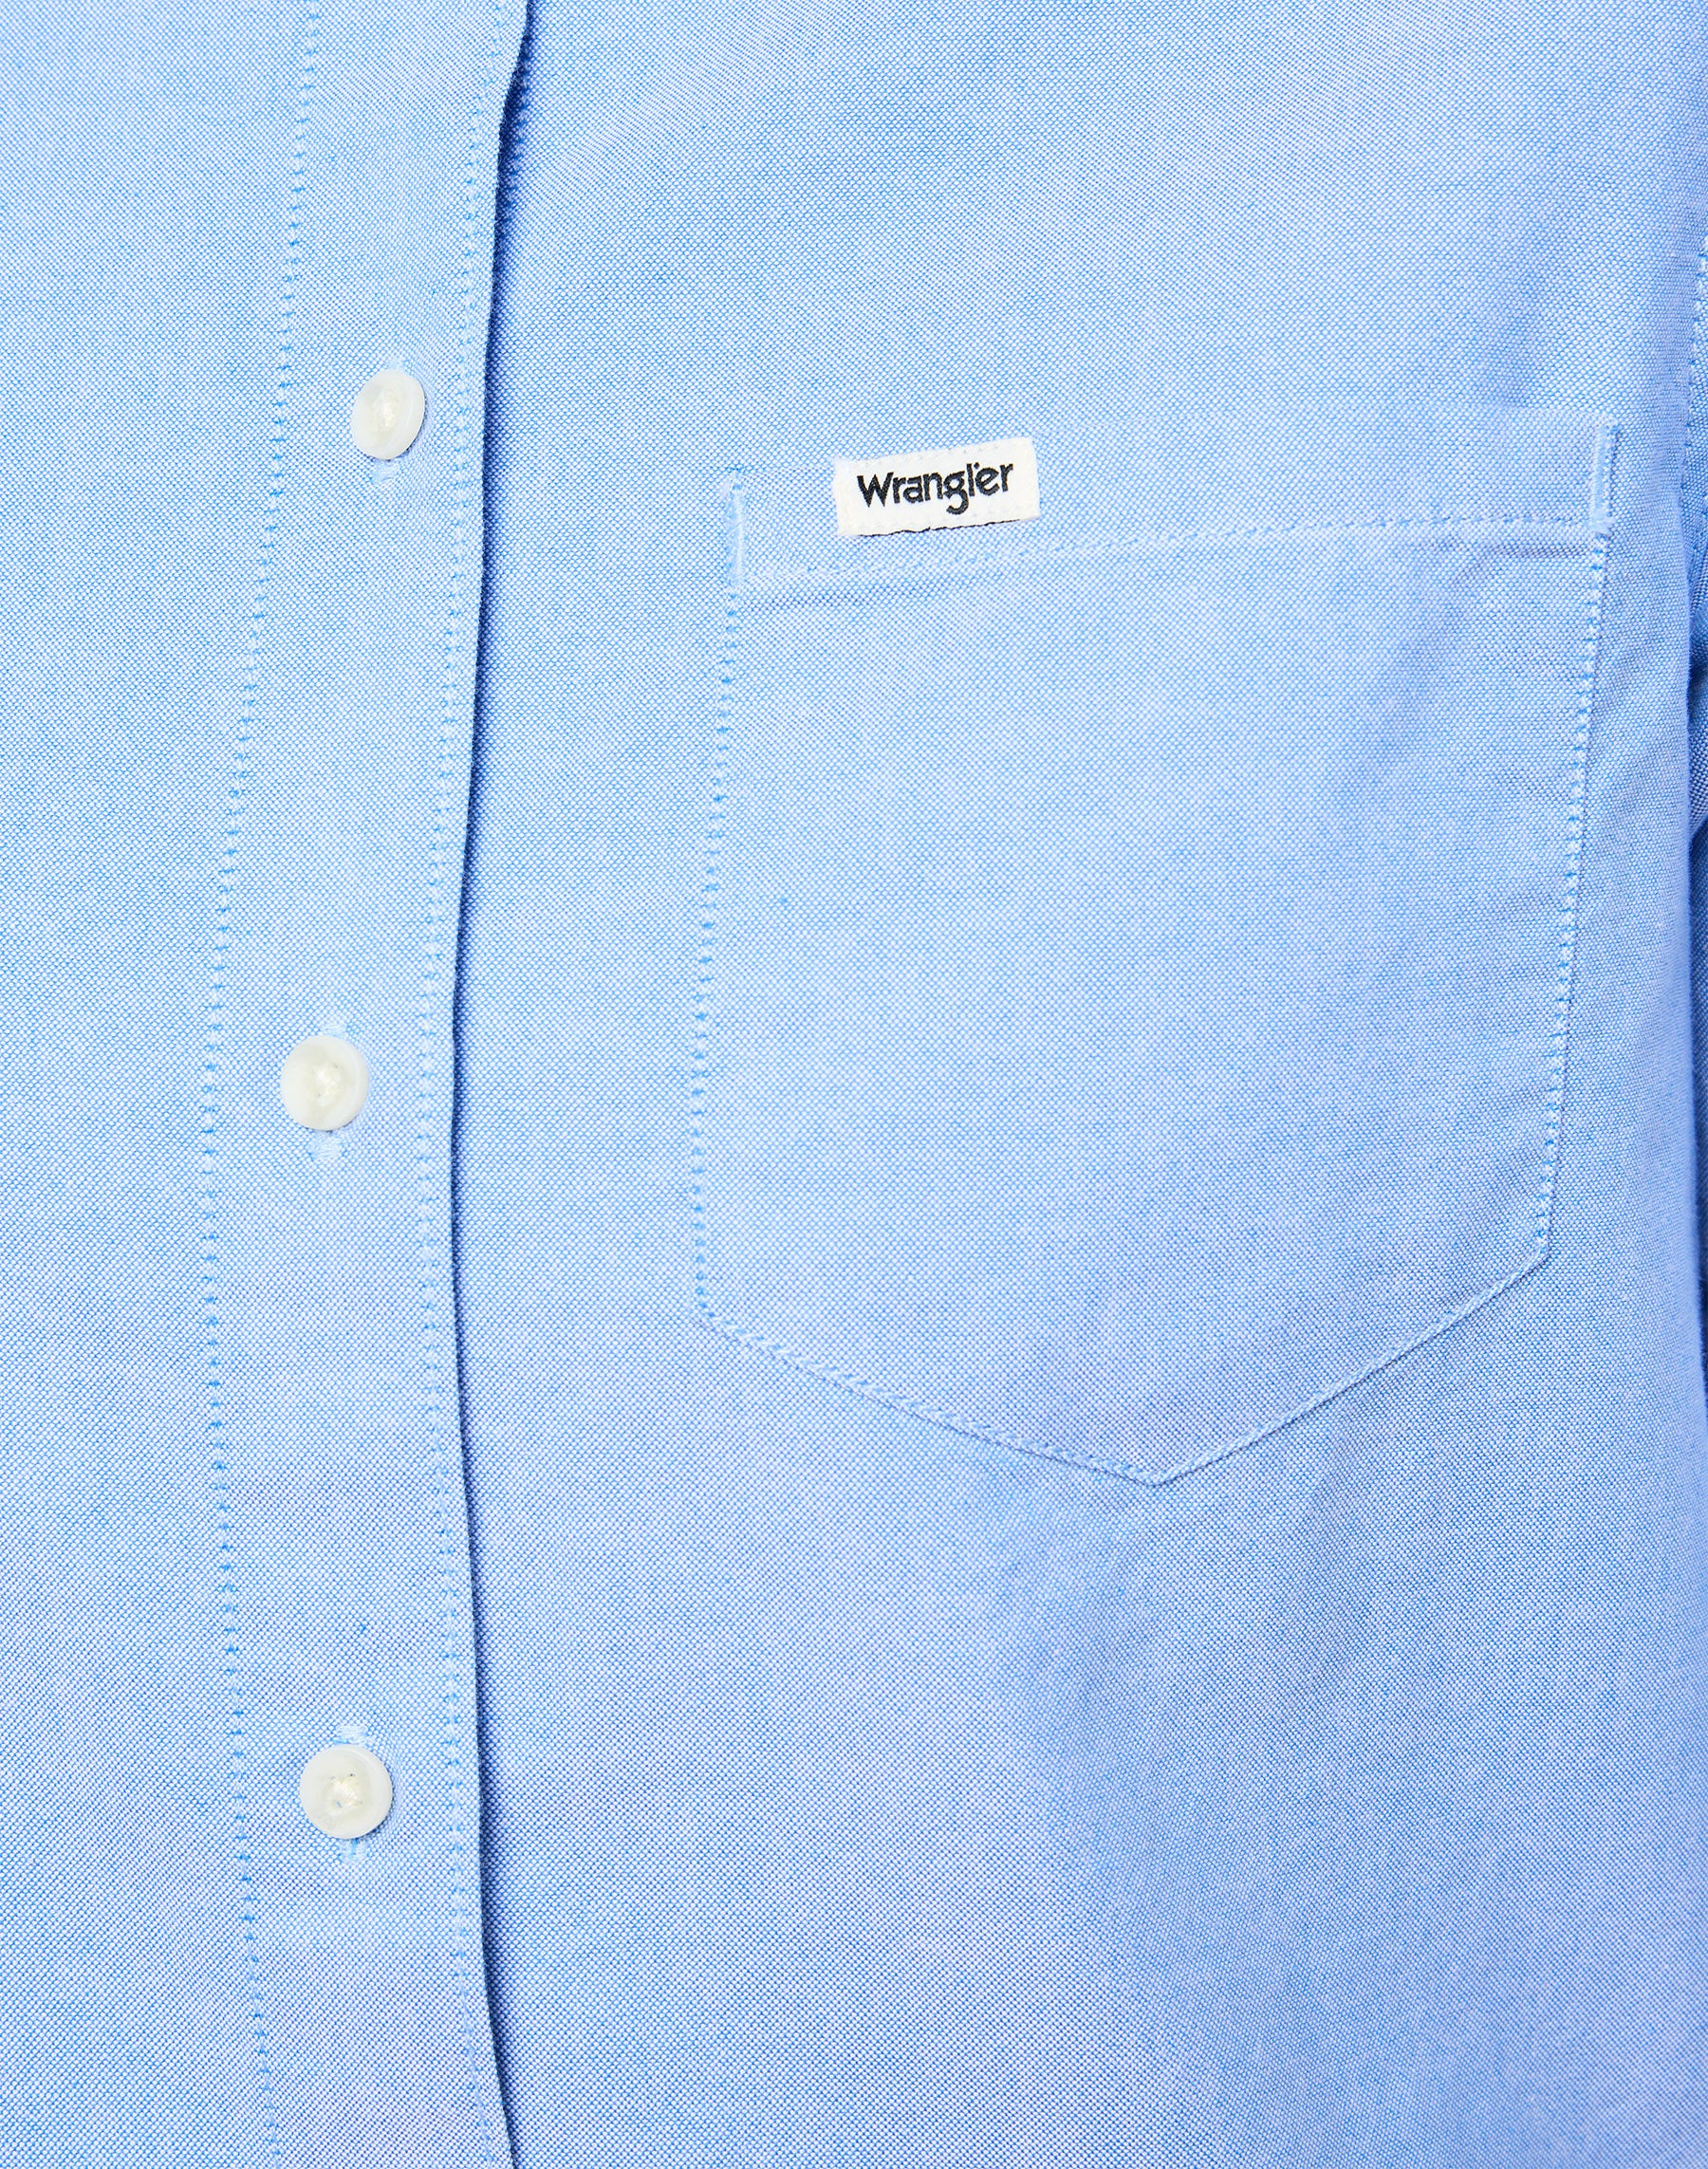 One Pocket Shirt in Bright Blue Hemden Wrangler   